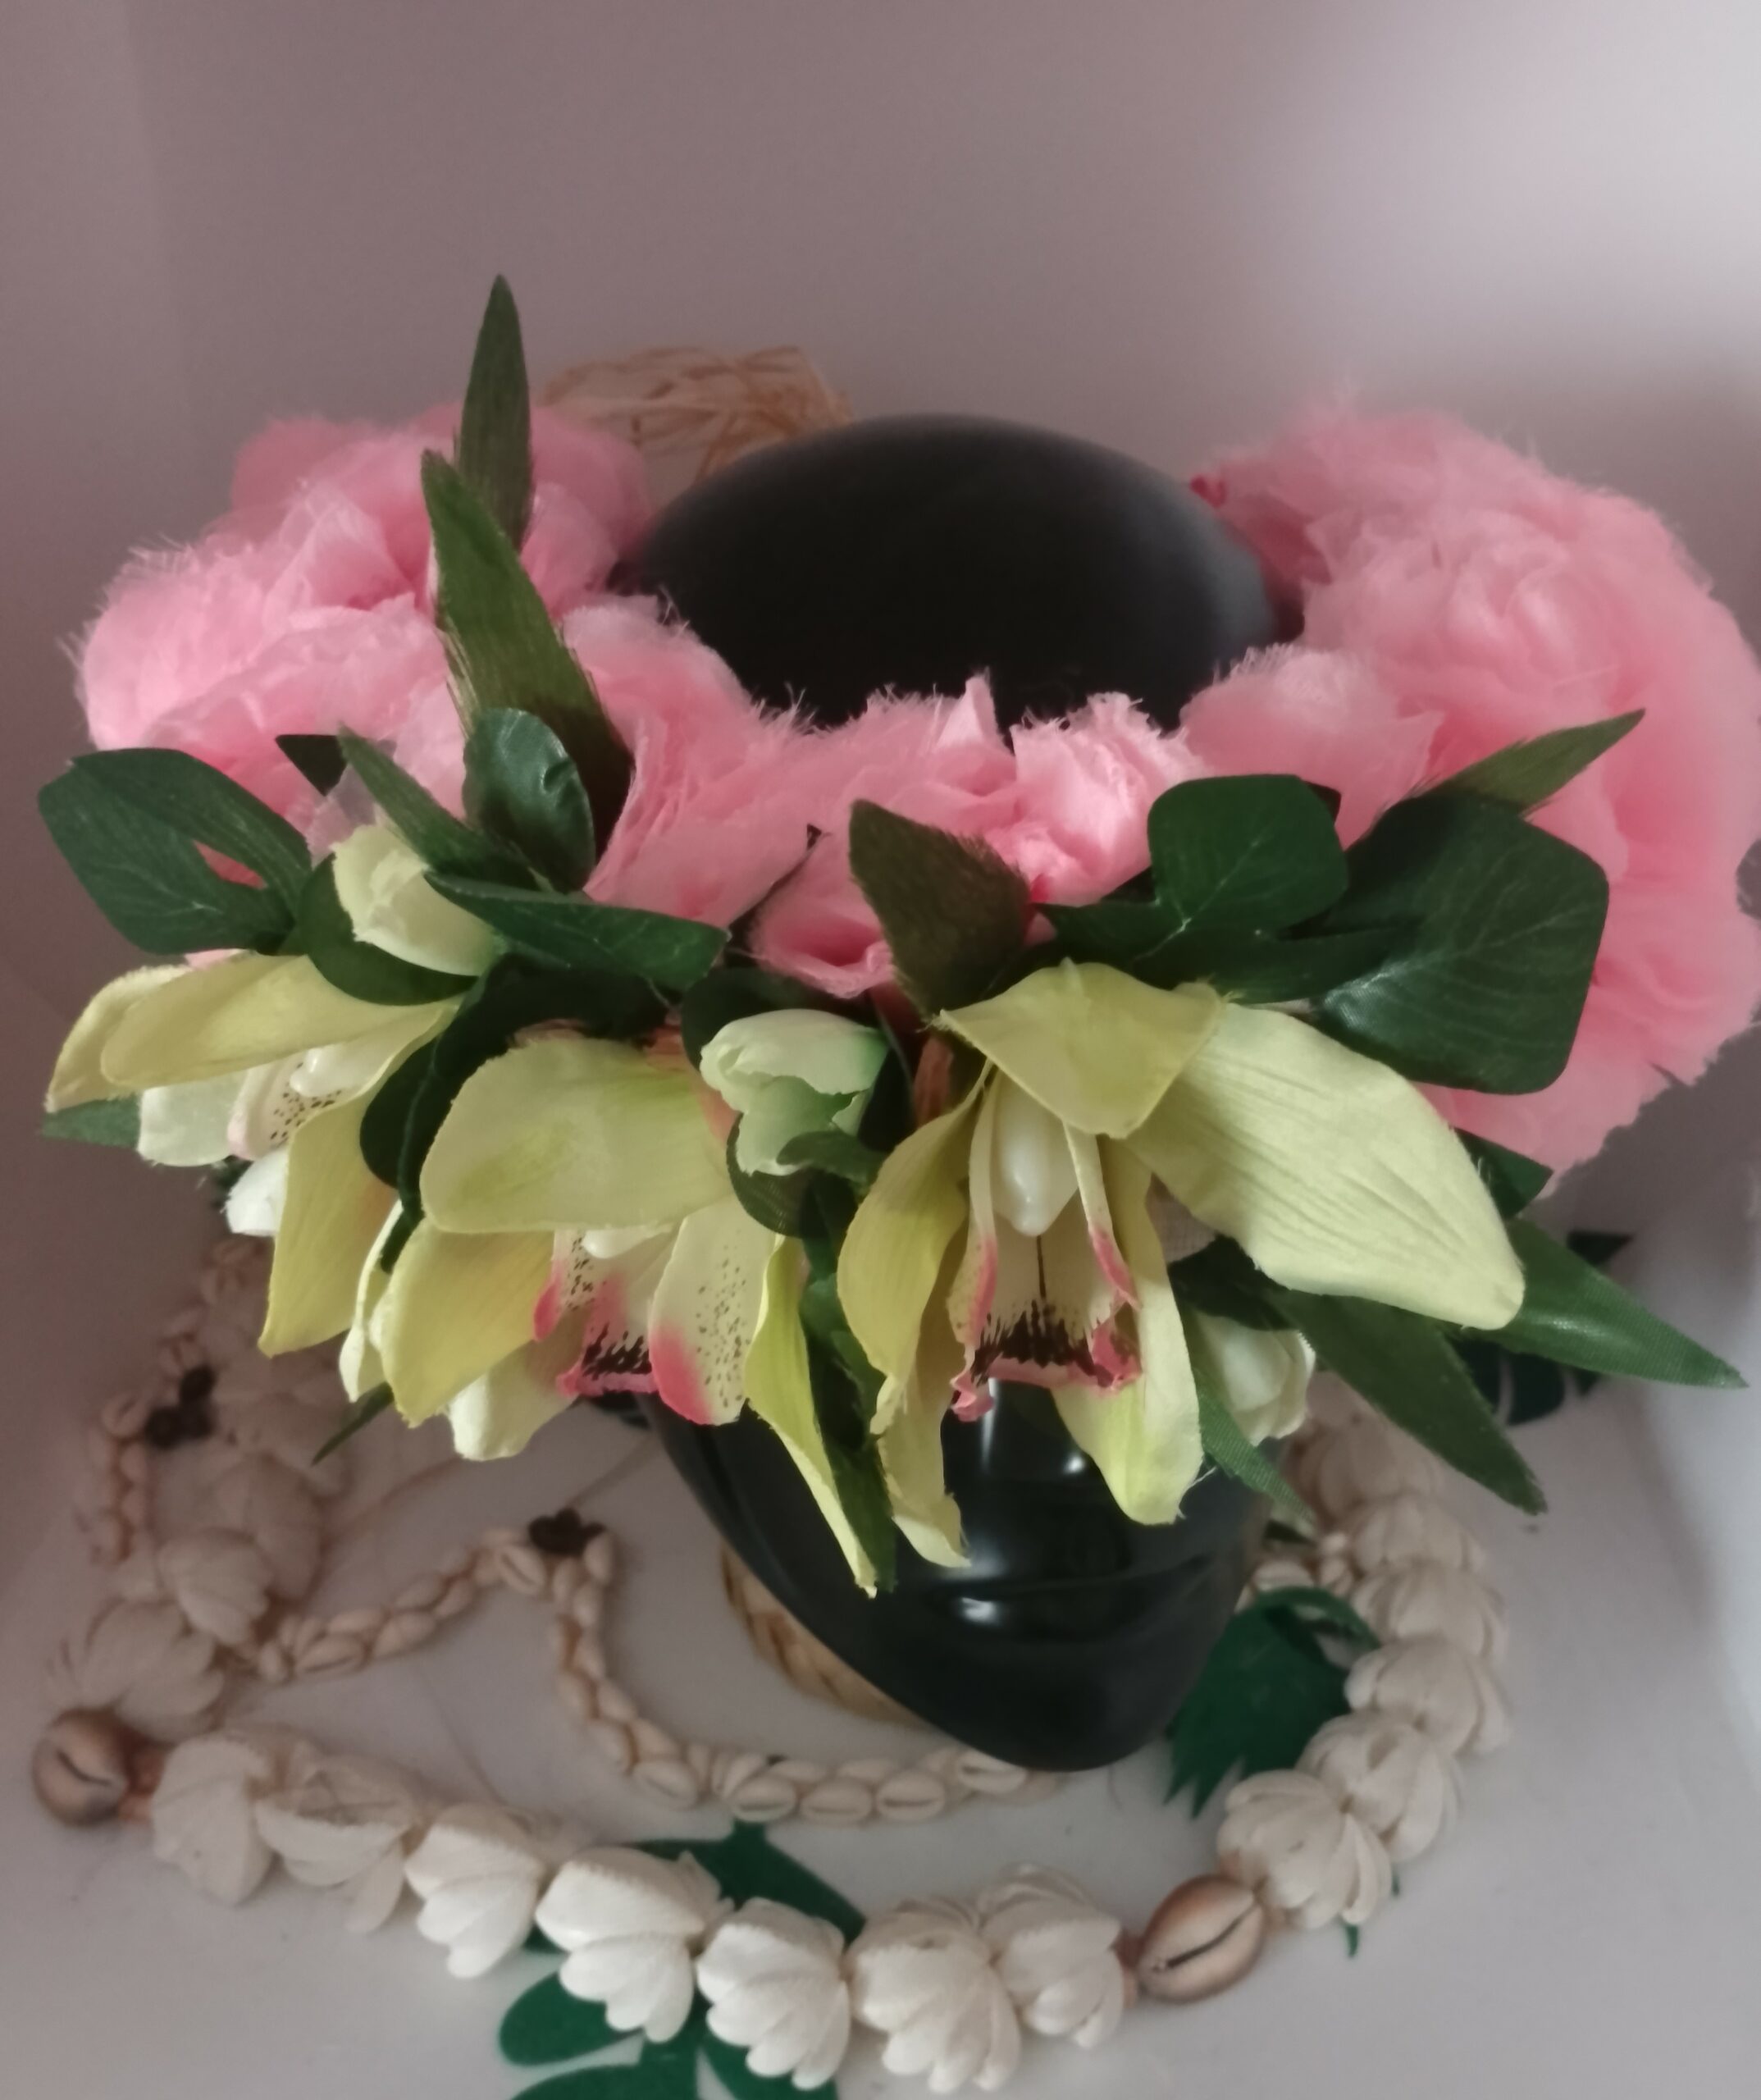 couronne de tête fleurs tahitiennes rose pâle orchidées vertes et roses by Vaite.e.Tiare créations